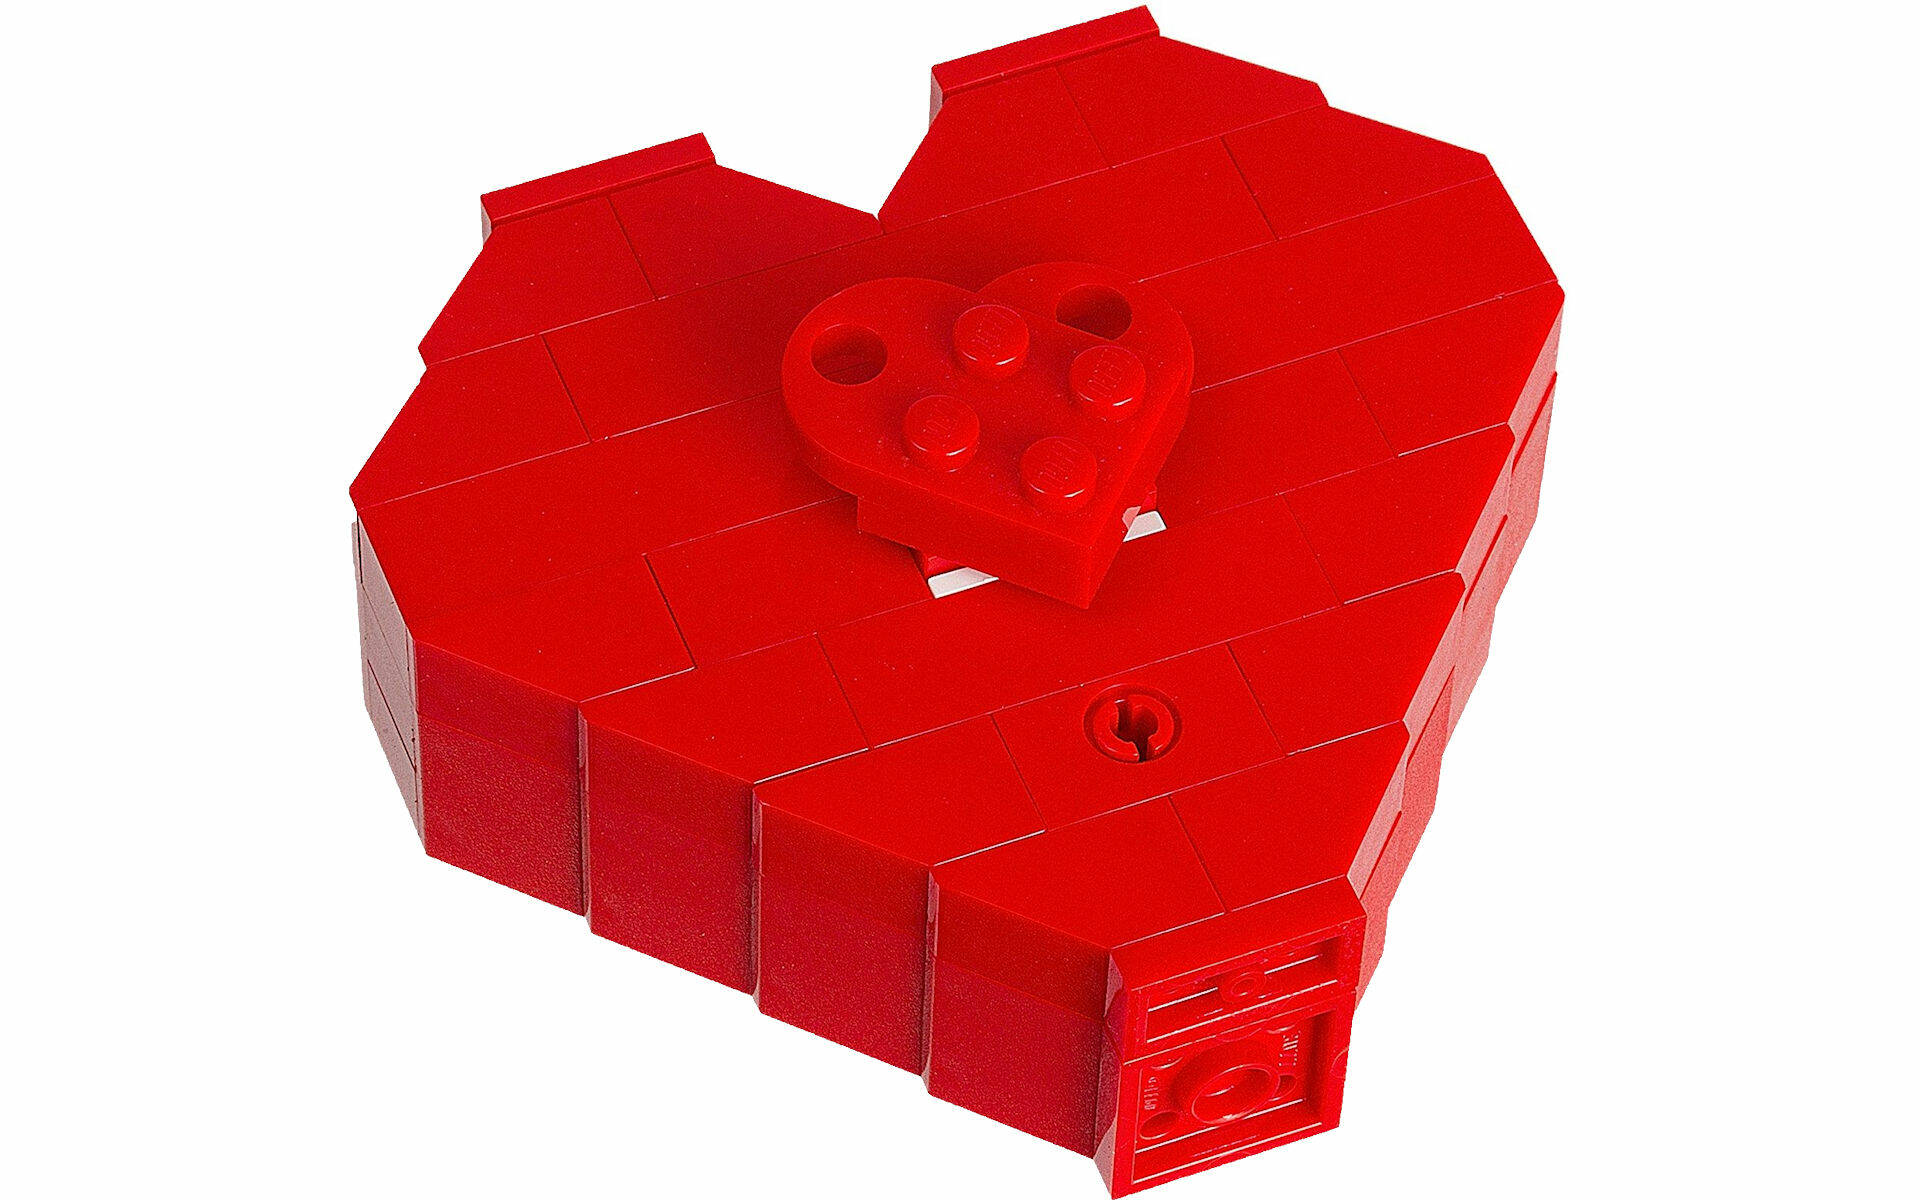 San Valentino e LEGO: i regali perfetti per stupire chi amiamo